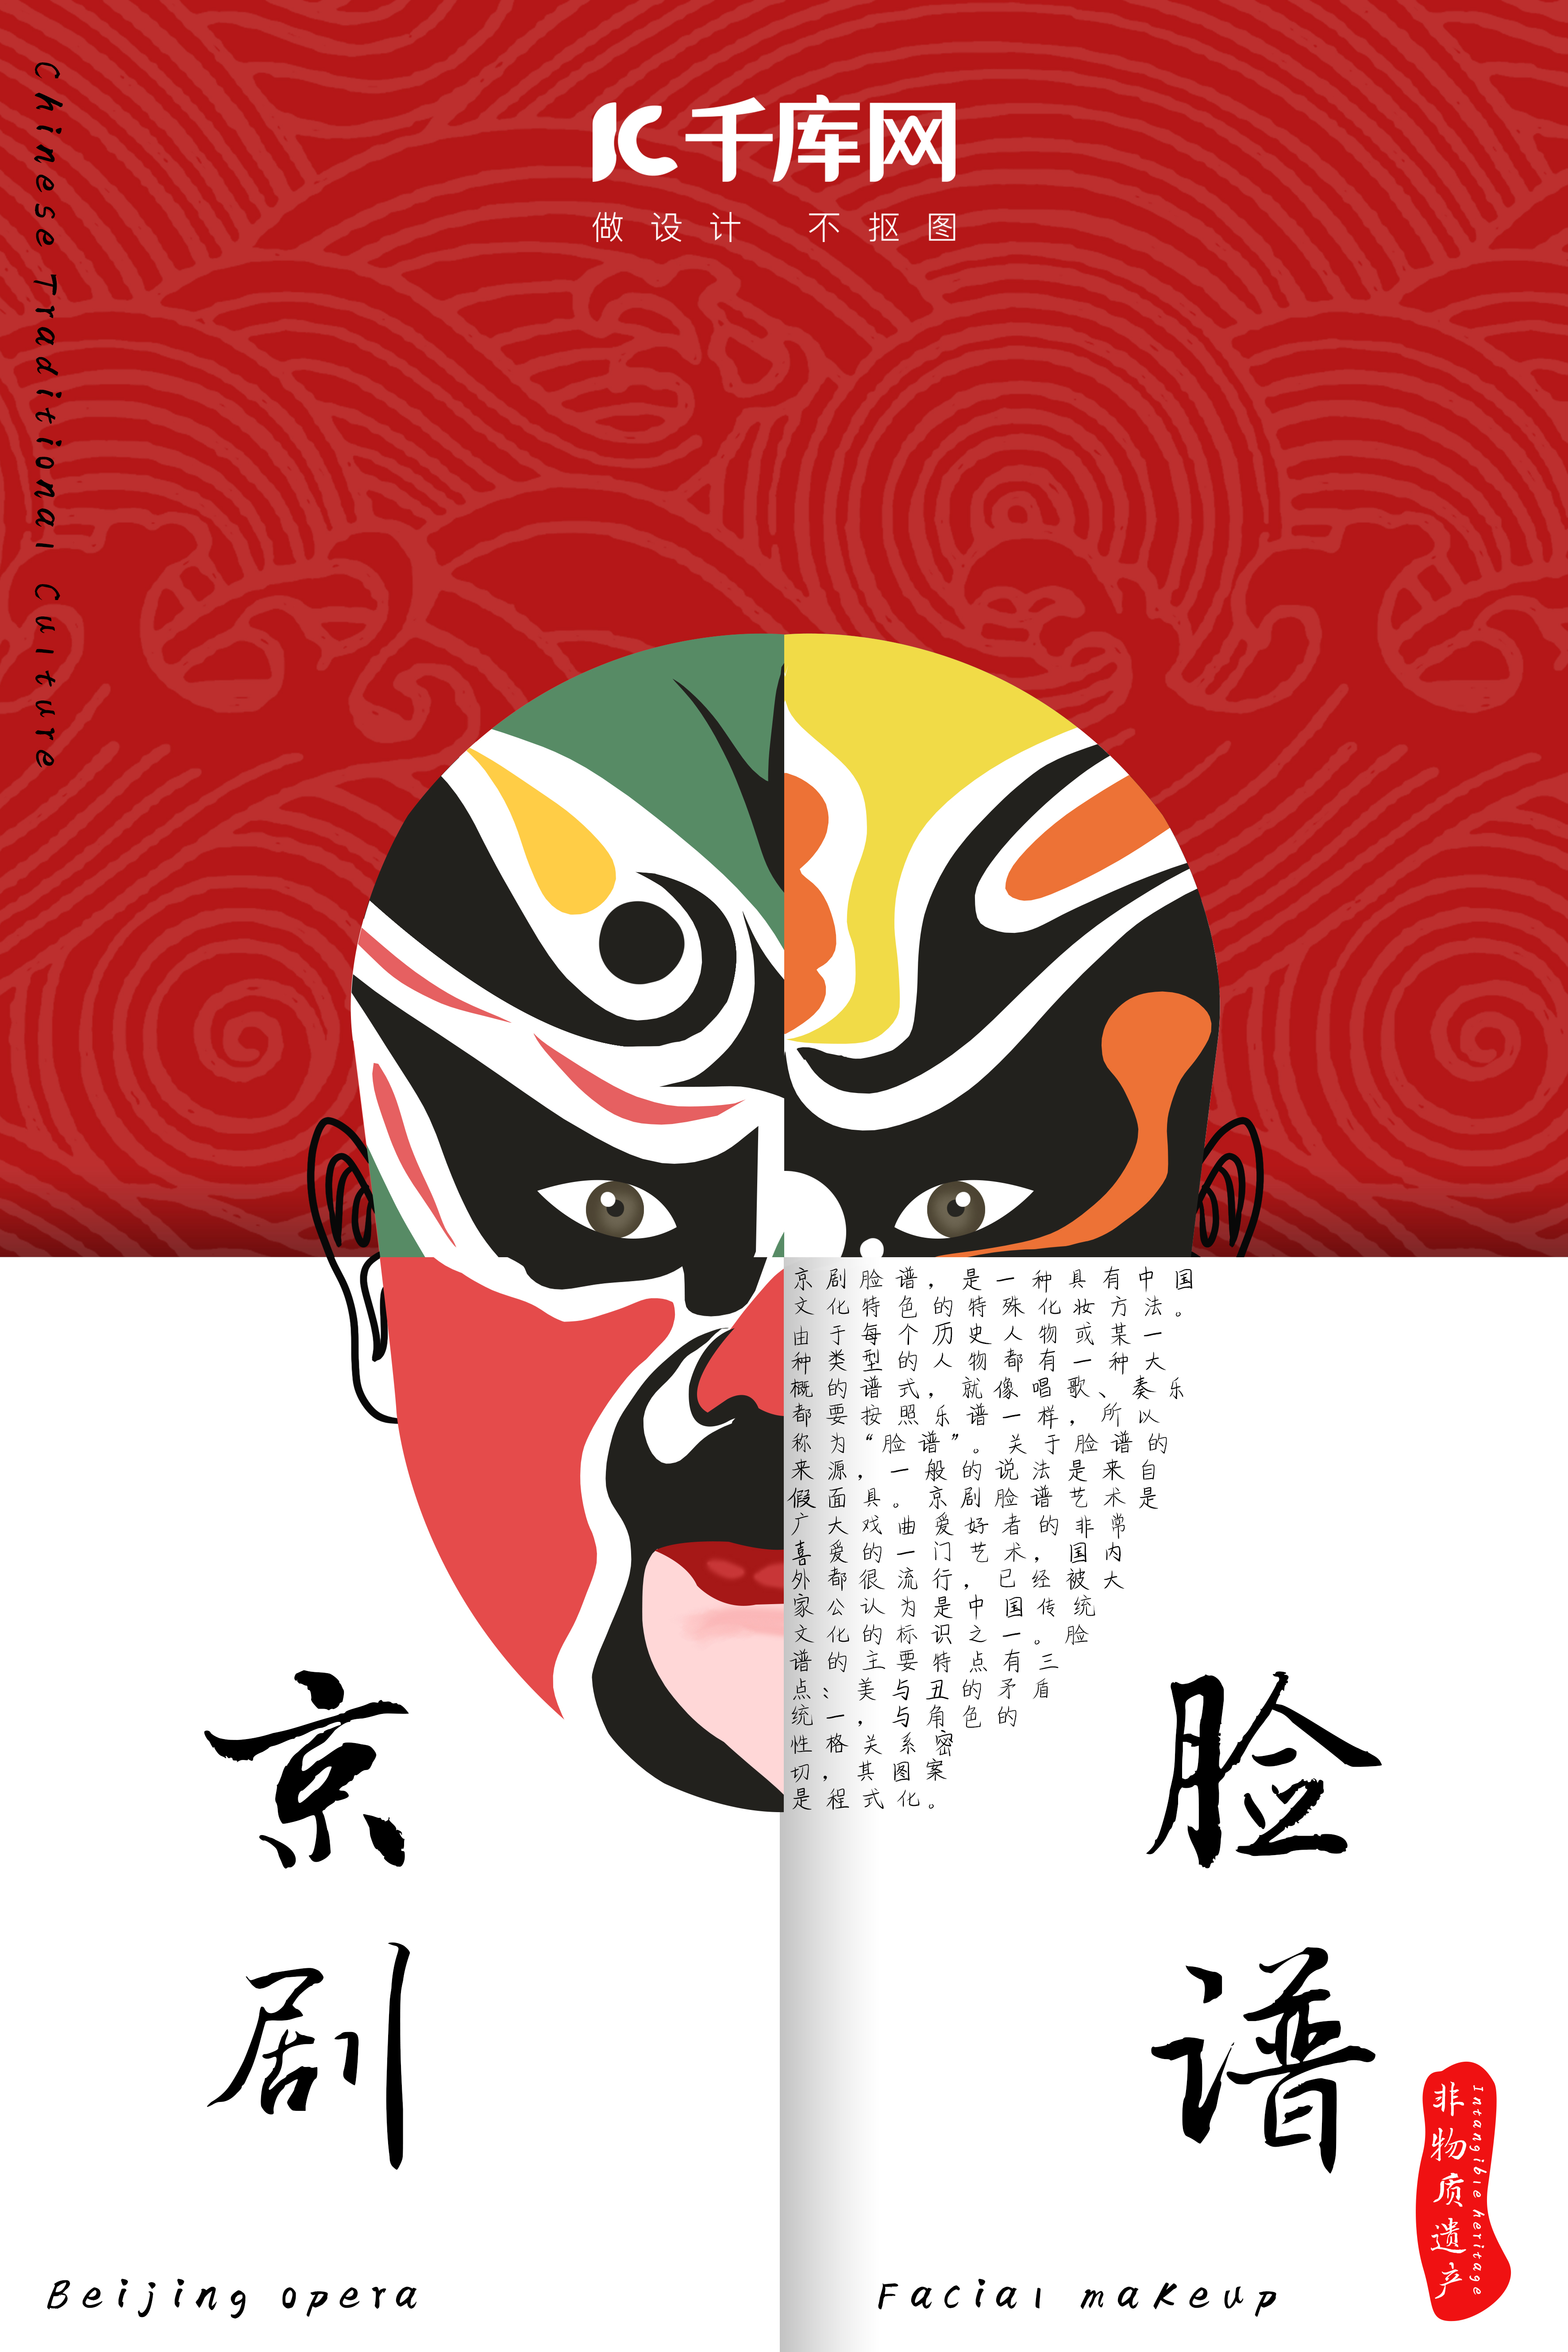 京剧脸谱中国风创意海报图片